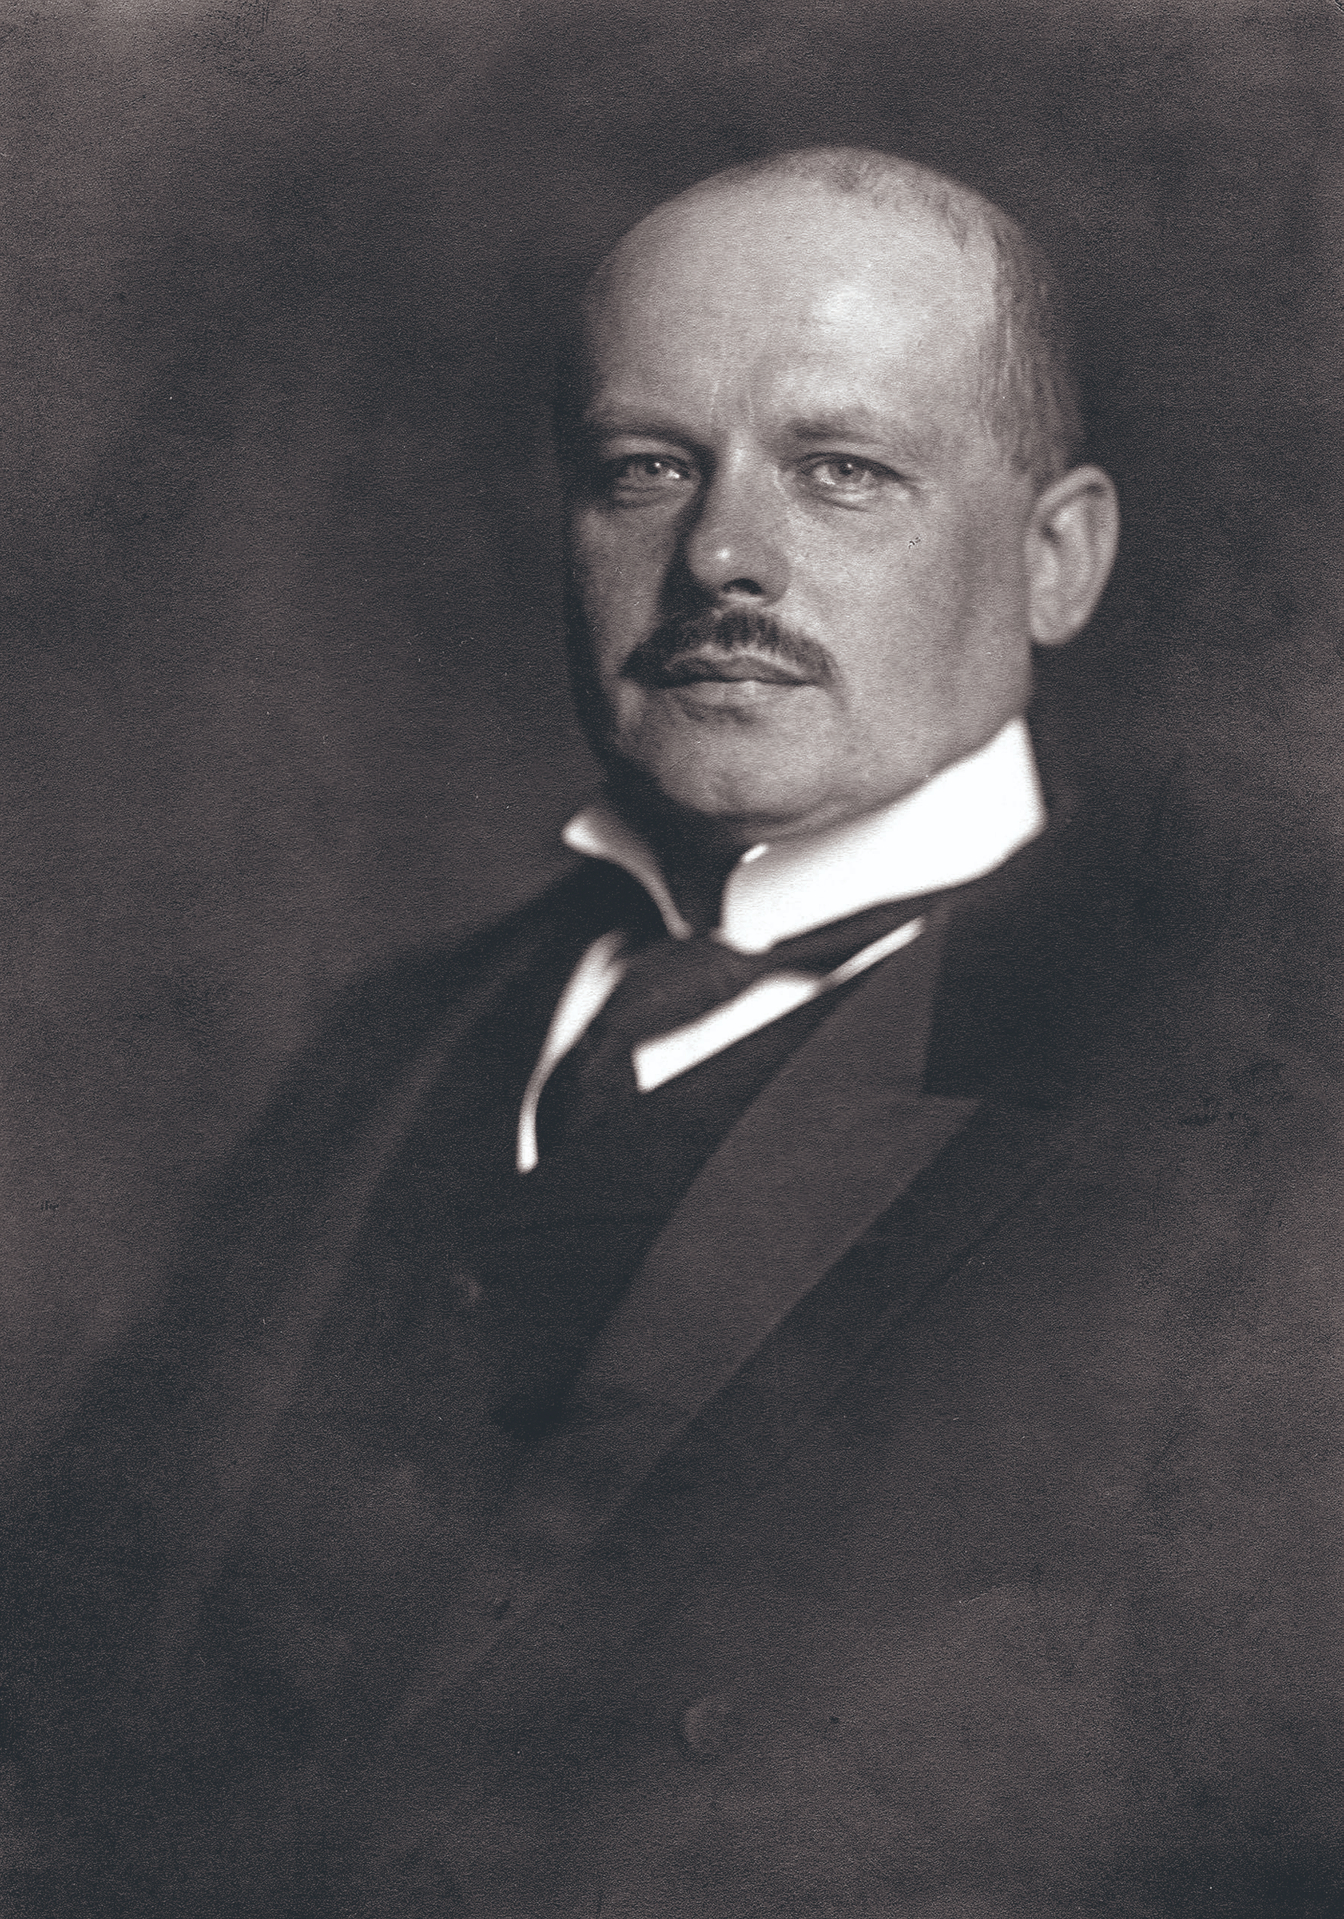 Er gehörte zu den Oberpräsidenten Ostpreußens, die einen prominenten Namen trugen: Adolf Tortilowicz von Batocki-Friebe, dessen Todestag sich am 22. Mai zum 80. Mal jährt